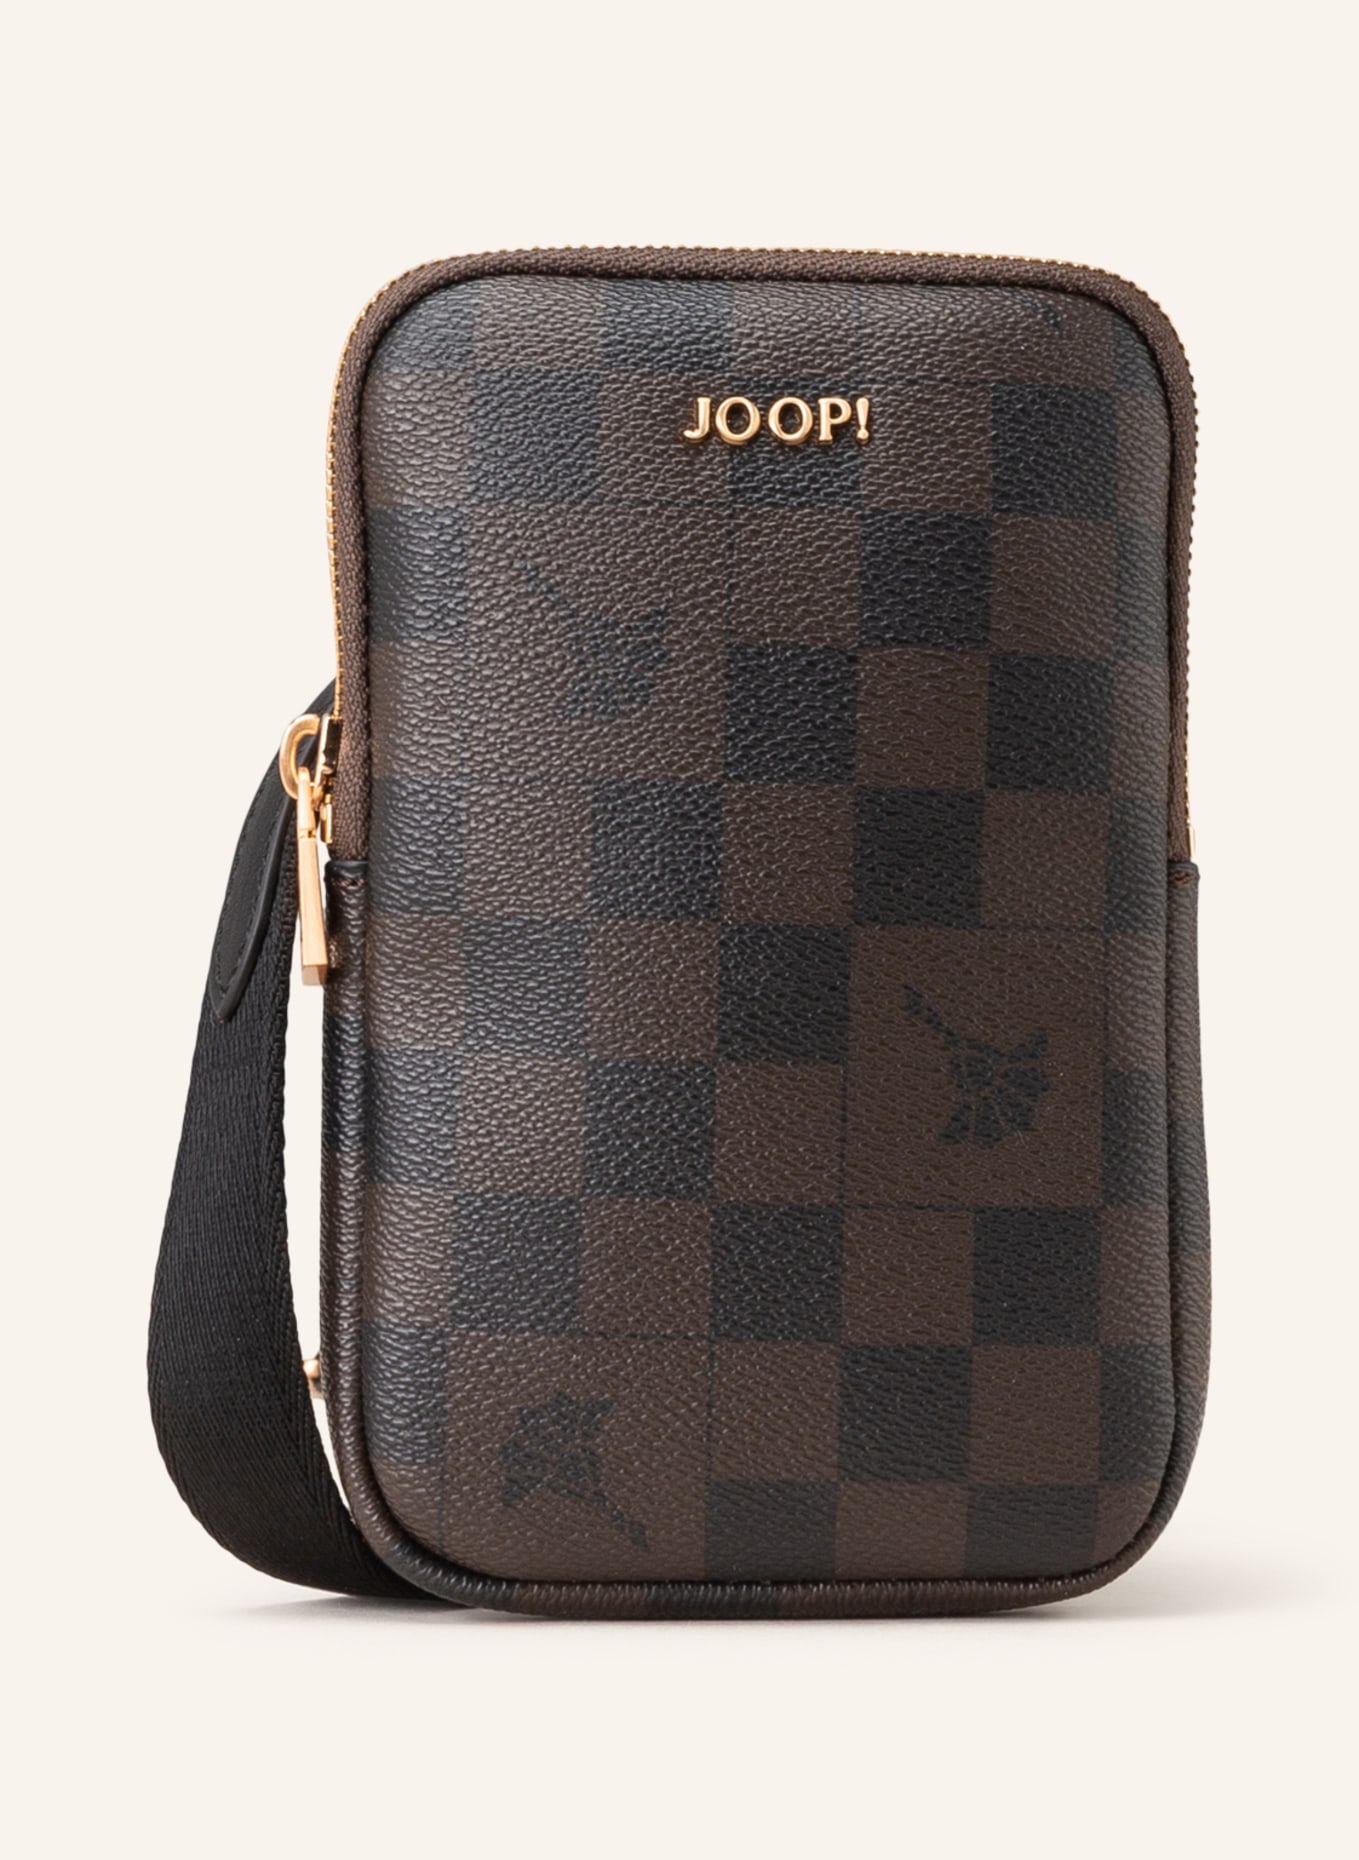 JOOP! Smartphone-Tasche CORTINA PIAZZA zum Umhängen, Farbe: DUNKELBRAUN (Bild 1)